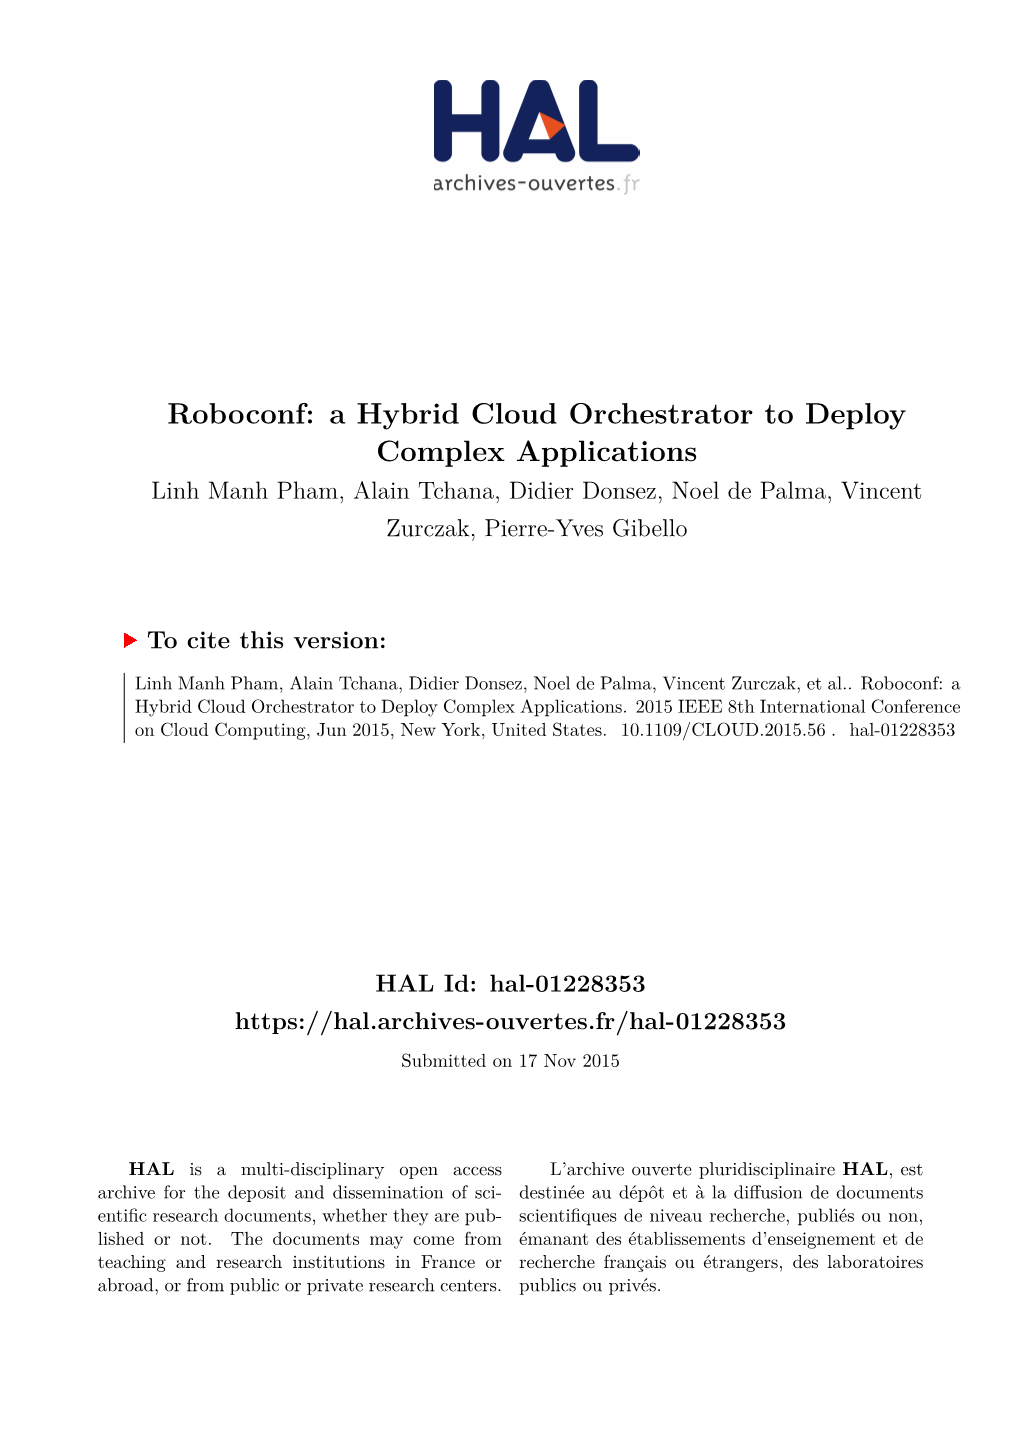 Roboconf: a Hybrid Cloud Orchestrator to Deploy Complex Applications Linh Manh Pham, Alain Tchana, Didier Donsez, Noel De Palma, Vincent Zurczak, Pierre-Yves Gibello